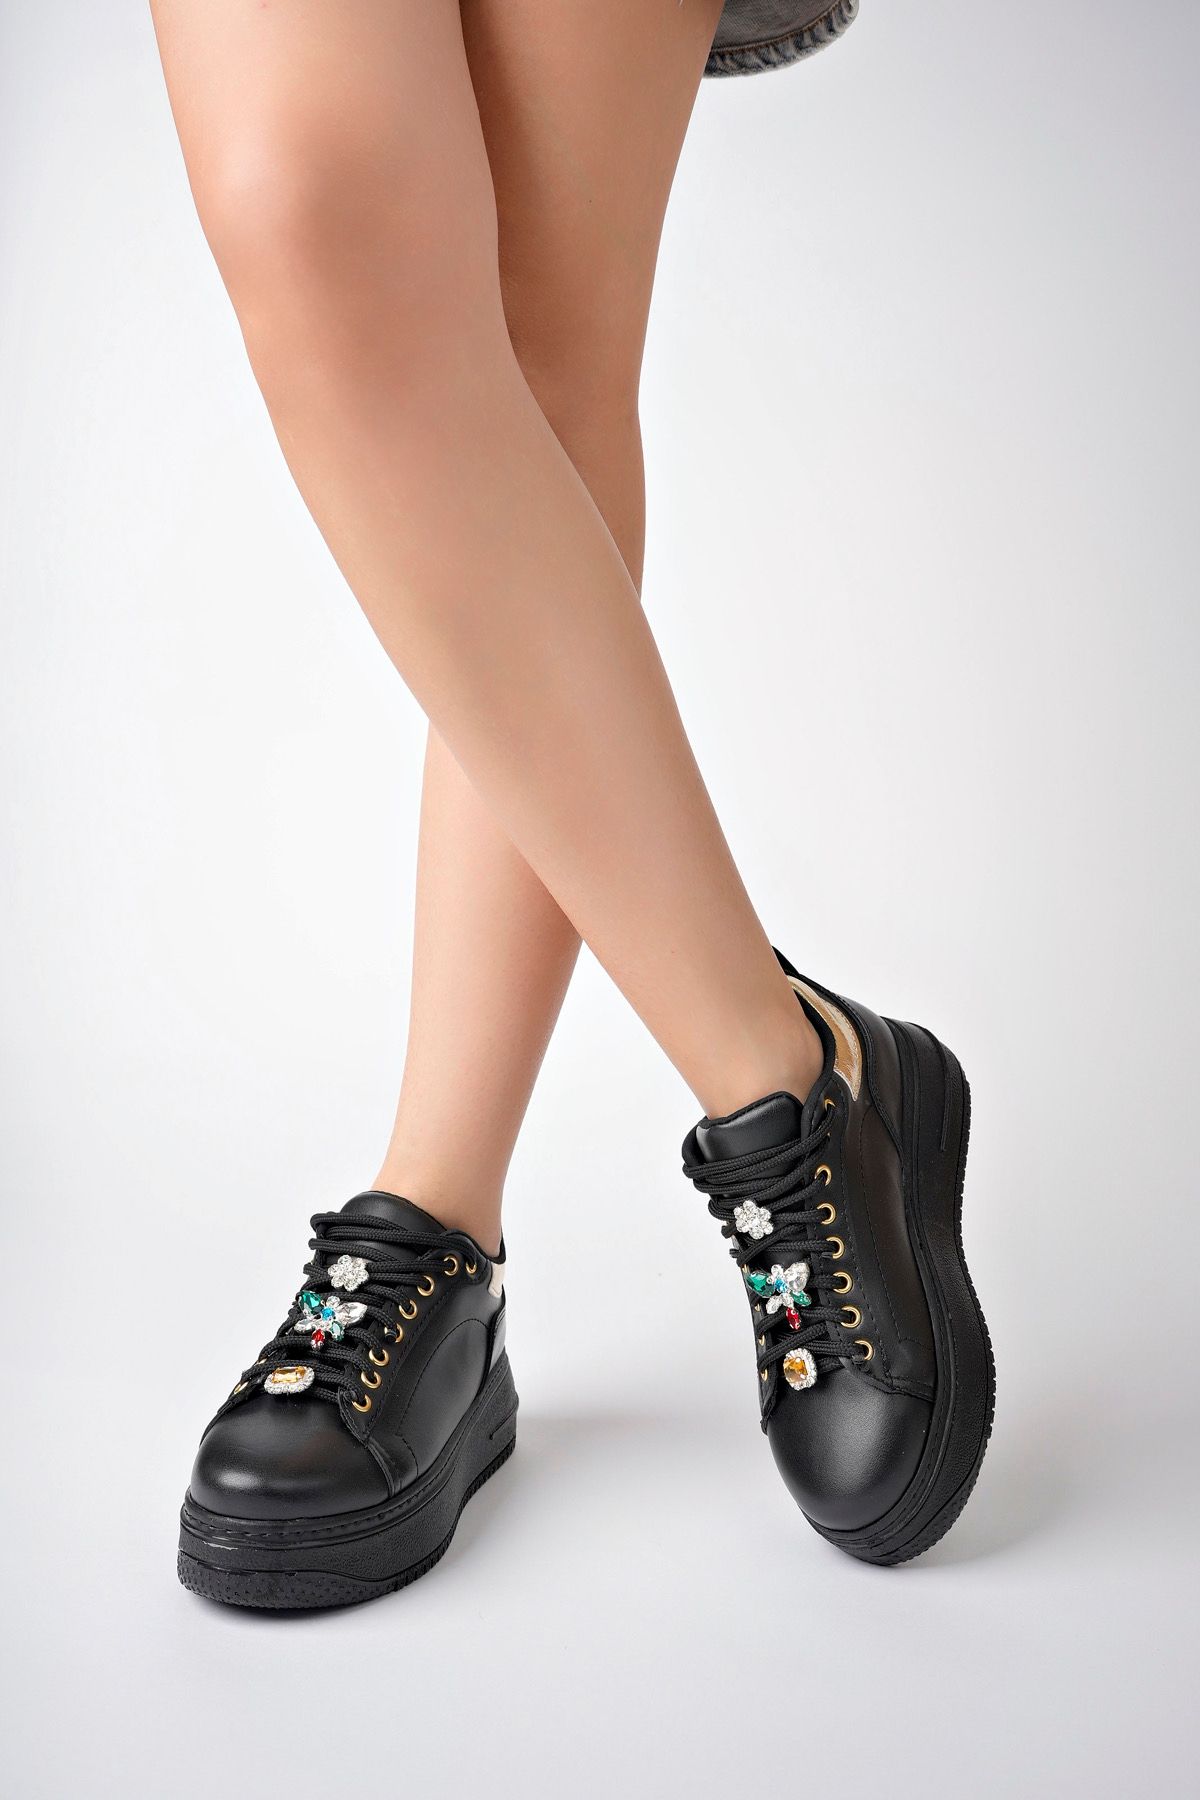 meyra'nın ayakkabıları Kadın Siyah Taşlı Spor Ayakkabı